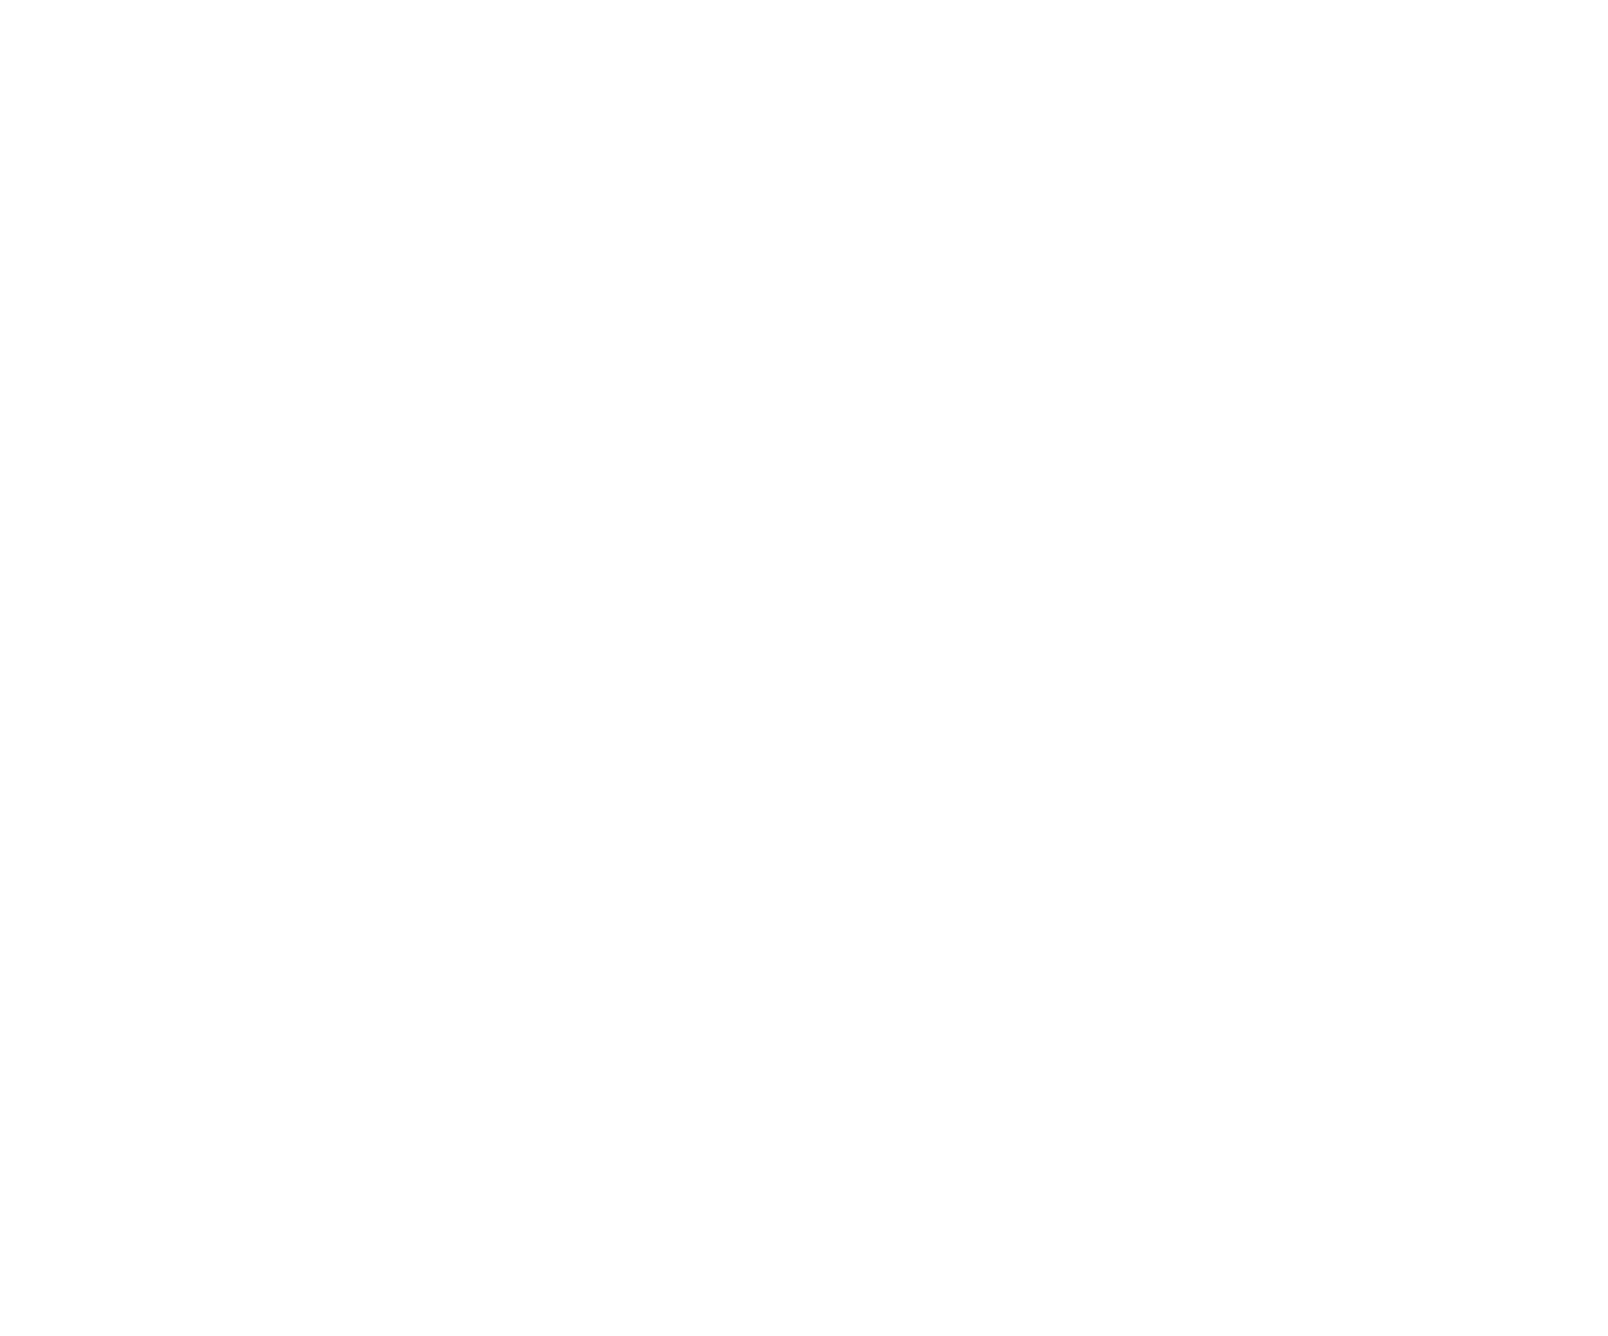 JTE Real Estate